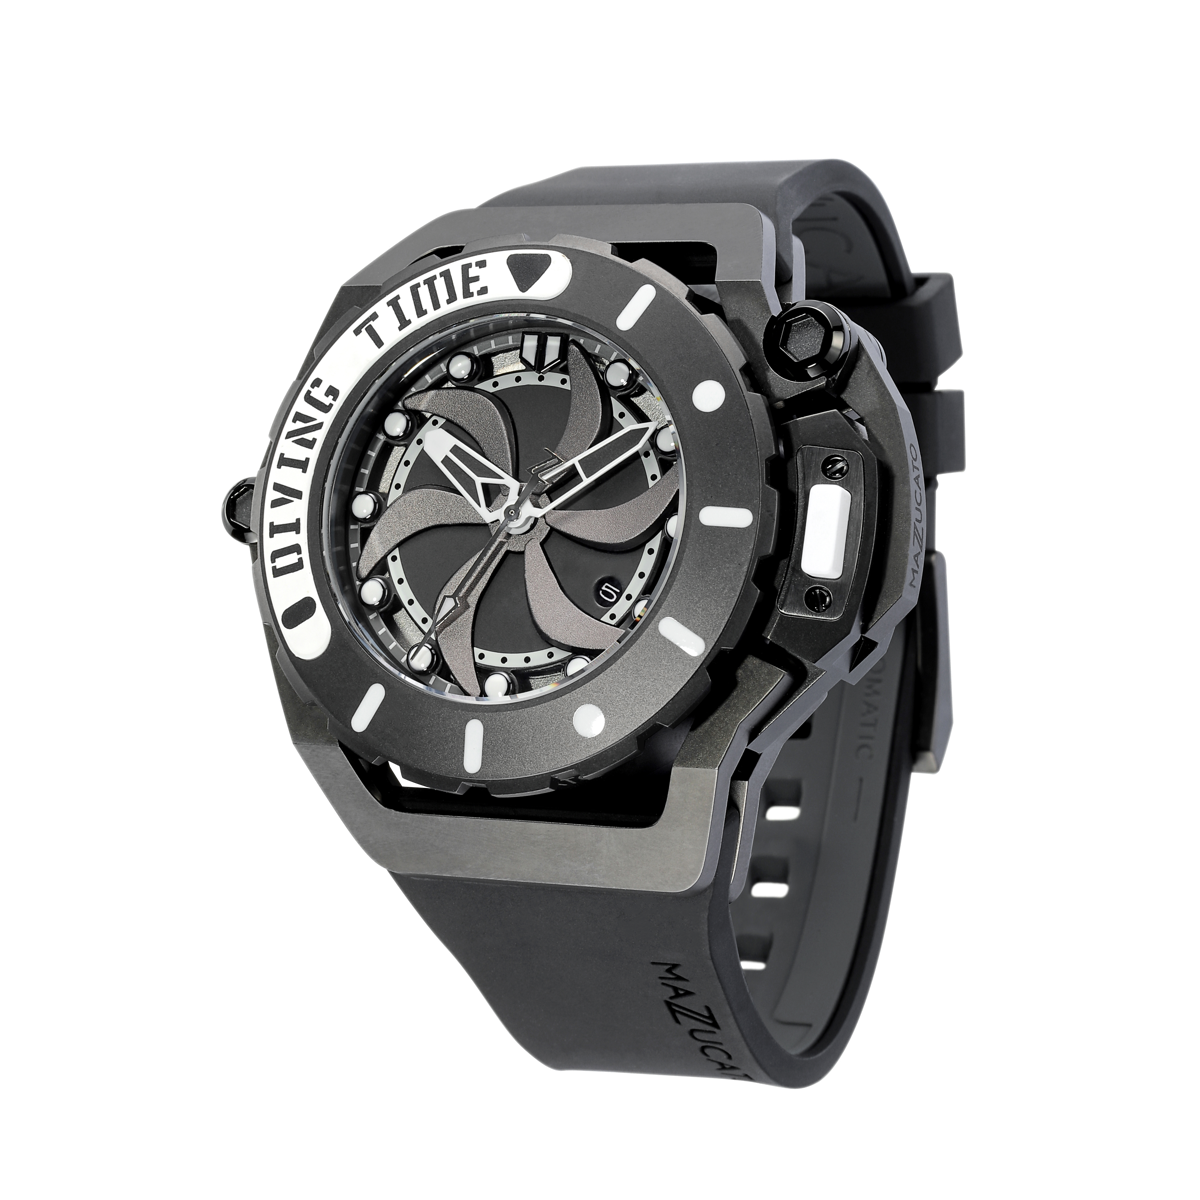 RIM Scuba Automatic Watch Ø48mm - Black | Scuba Diving Watches | Luxury Scuba Watches